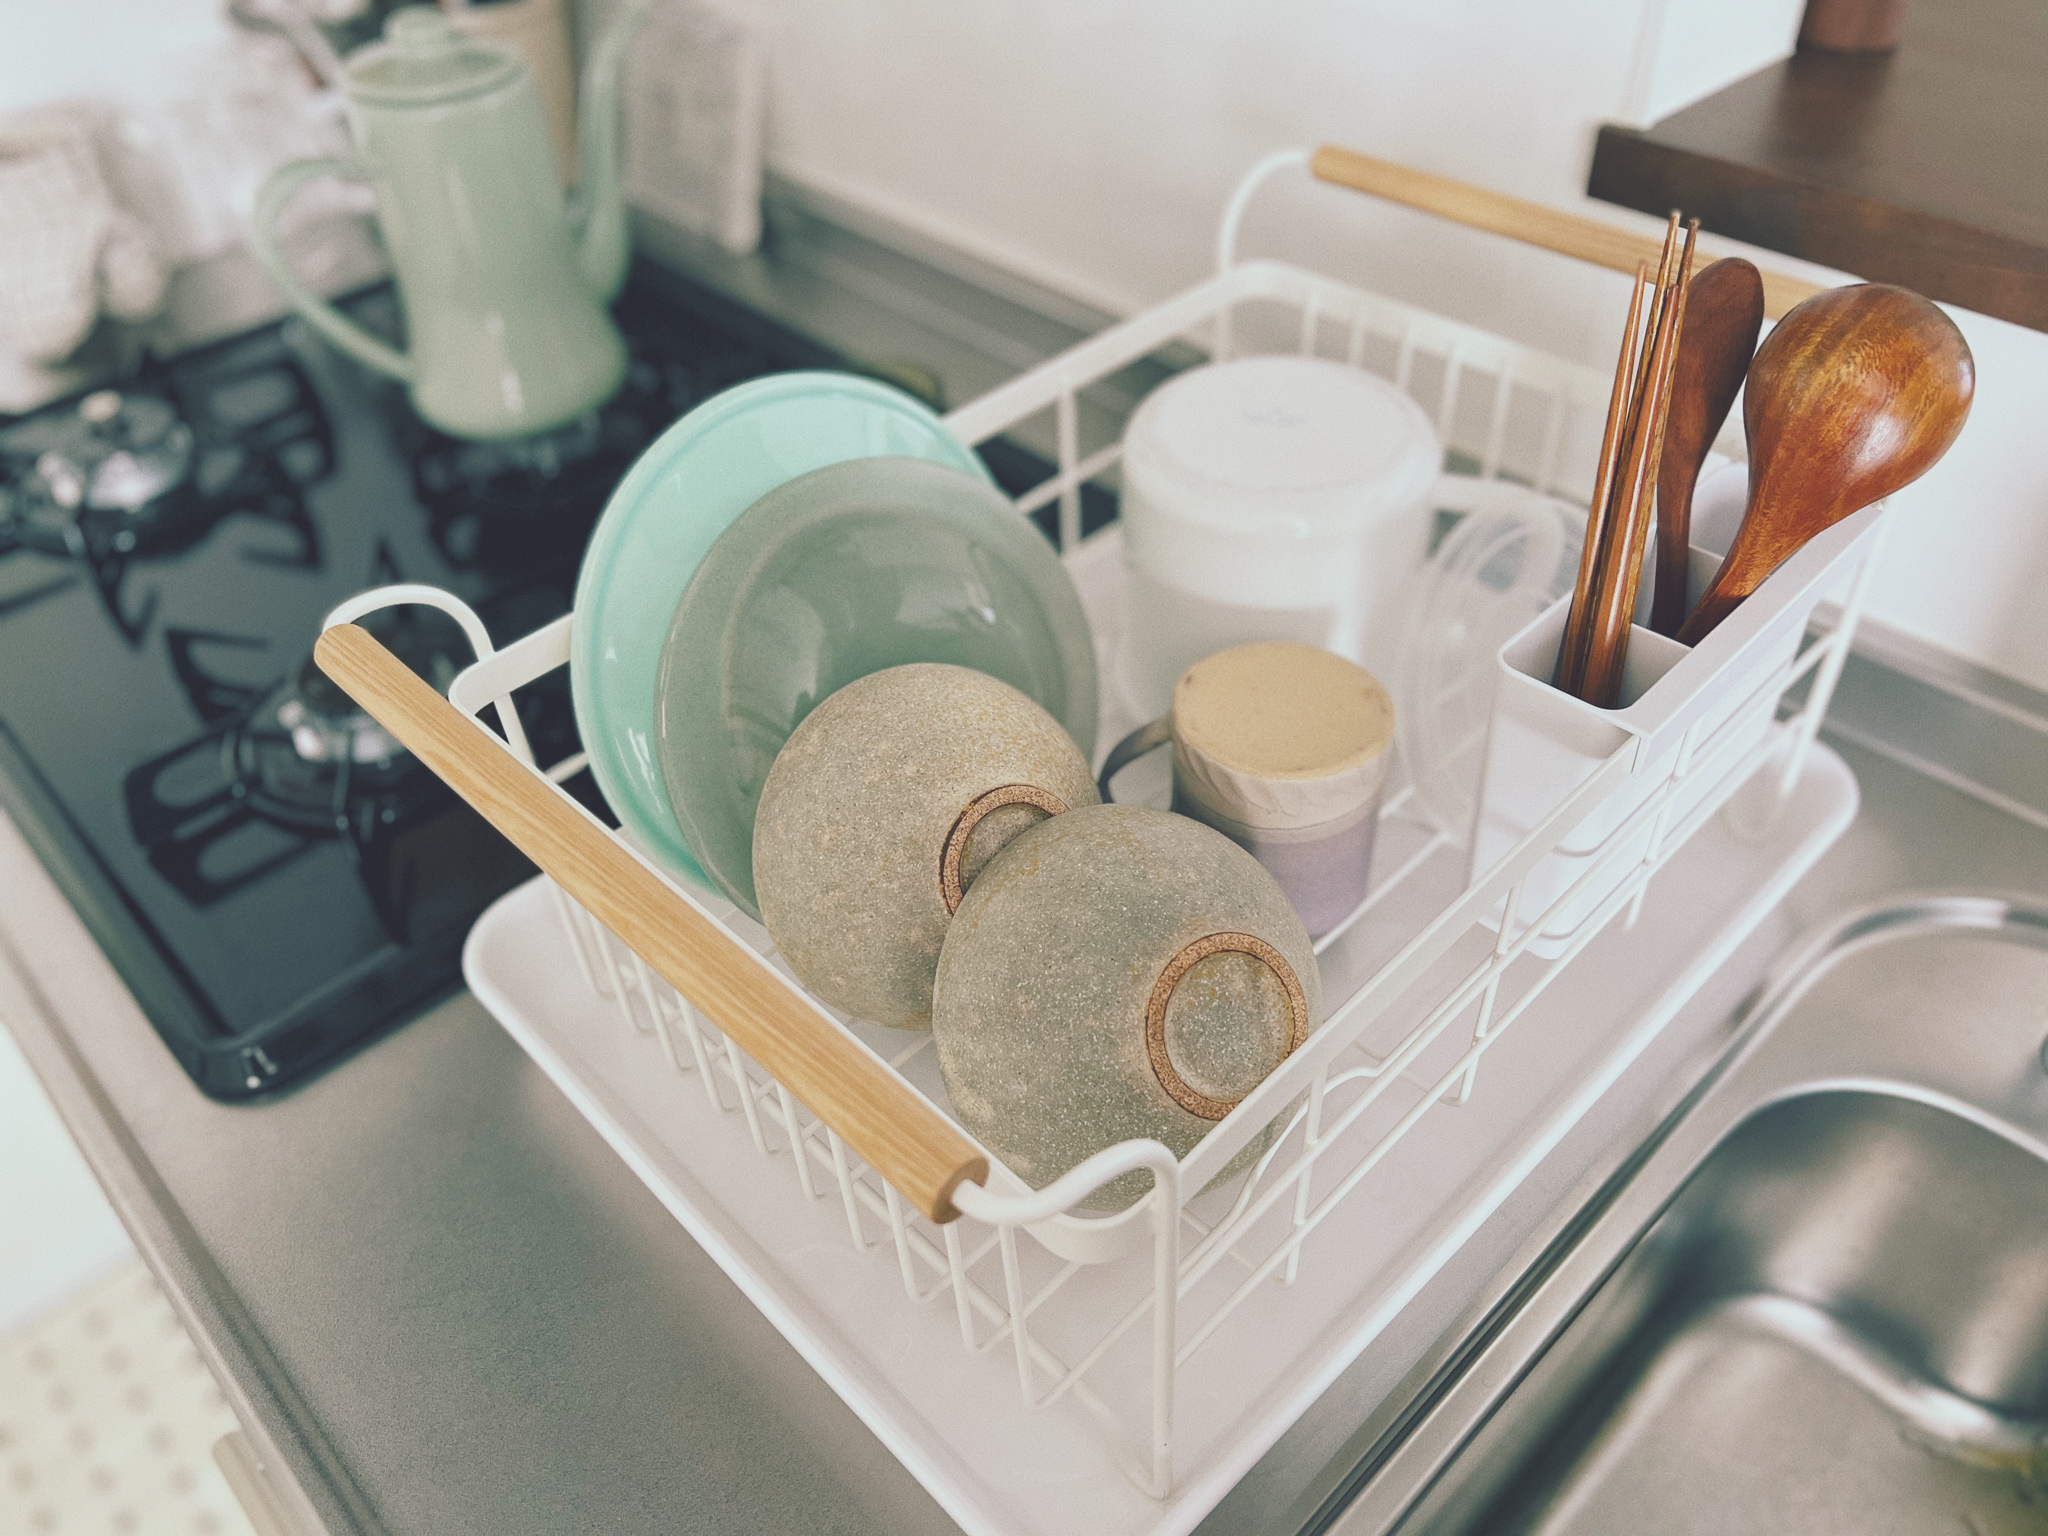 二人暮らし分の洗い物なら難なく入る、サイズ感も便利だそう。取っ手部分には洗ったタオルや布巾をかけておけるのも良いですね。